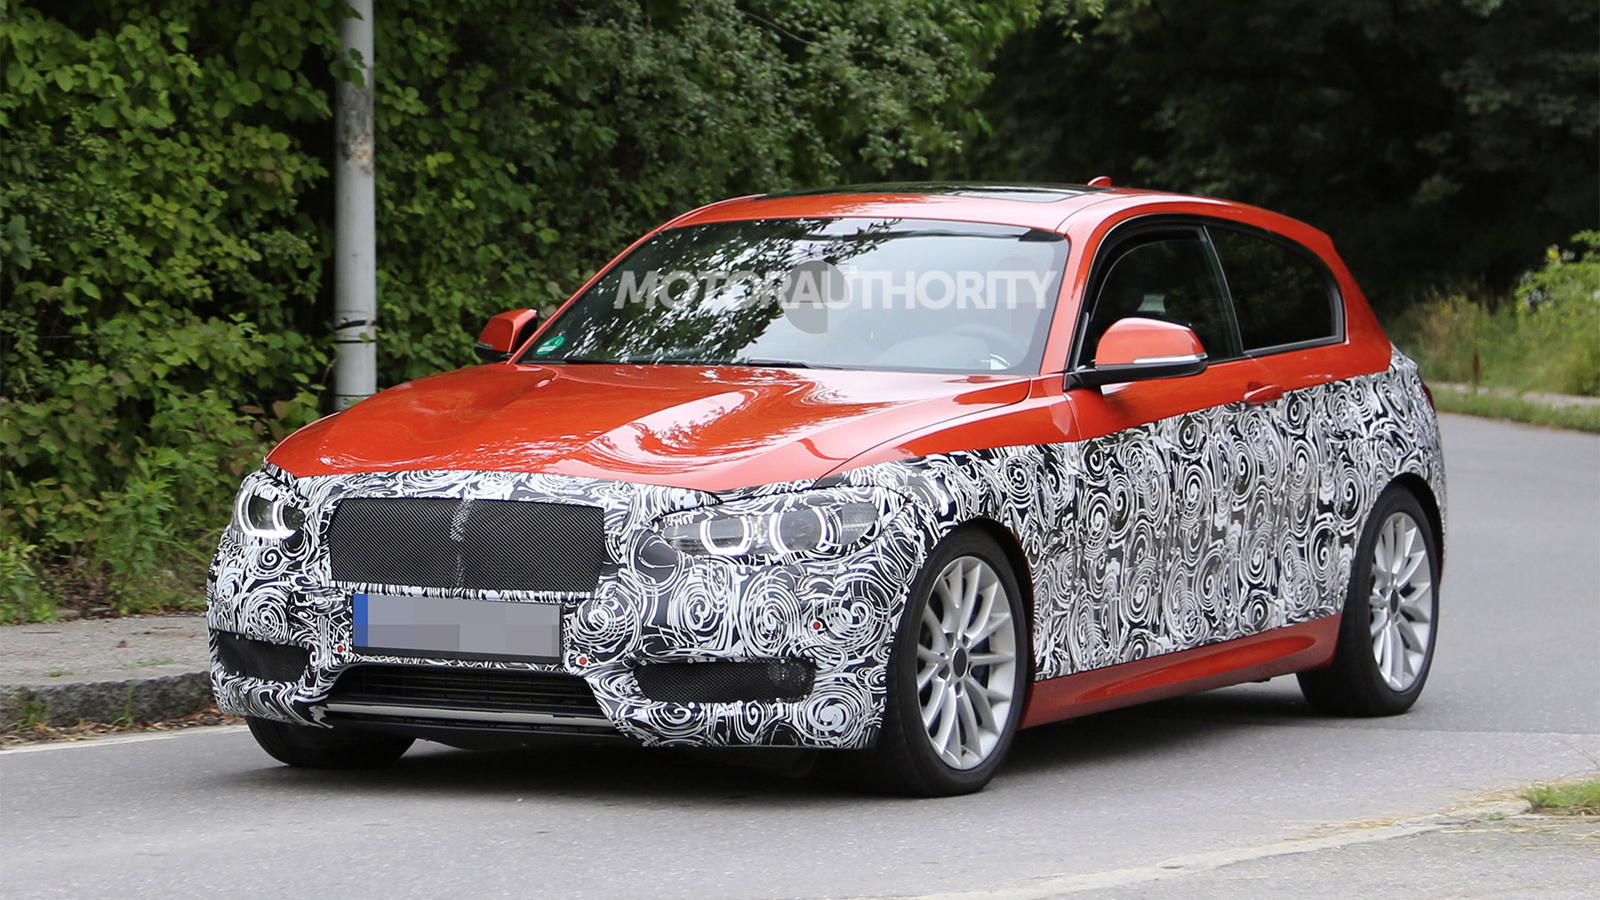 2015 BMW 1-Series Hatchback facelift spy shots